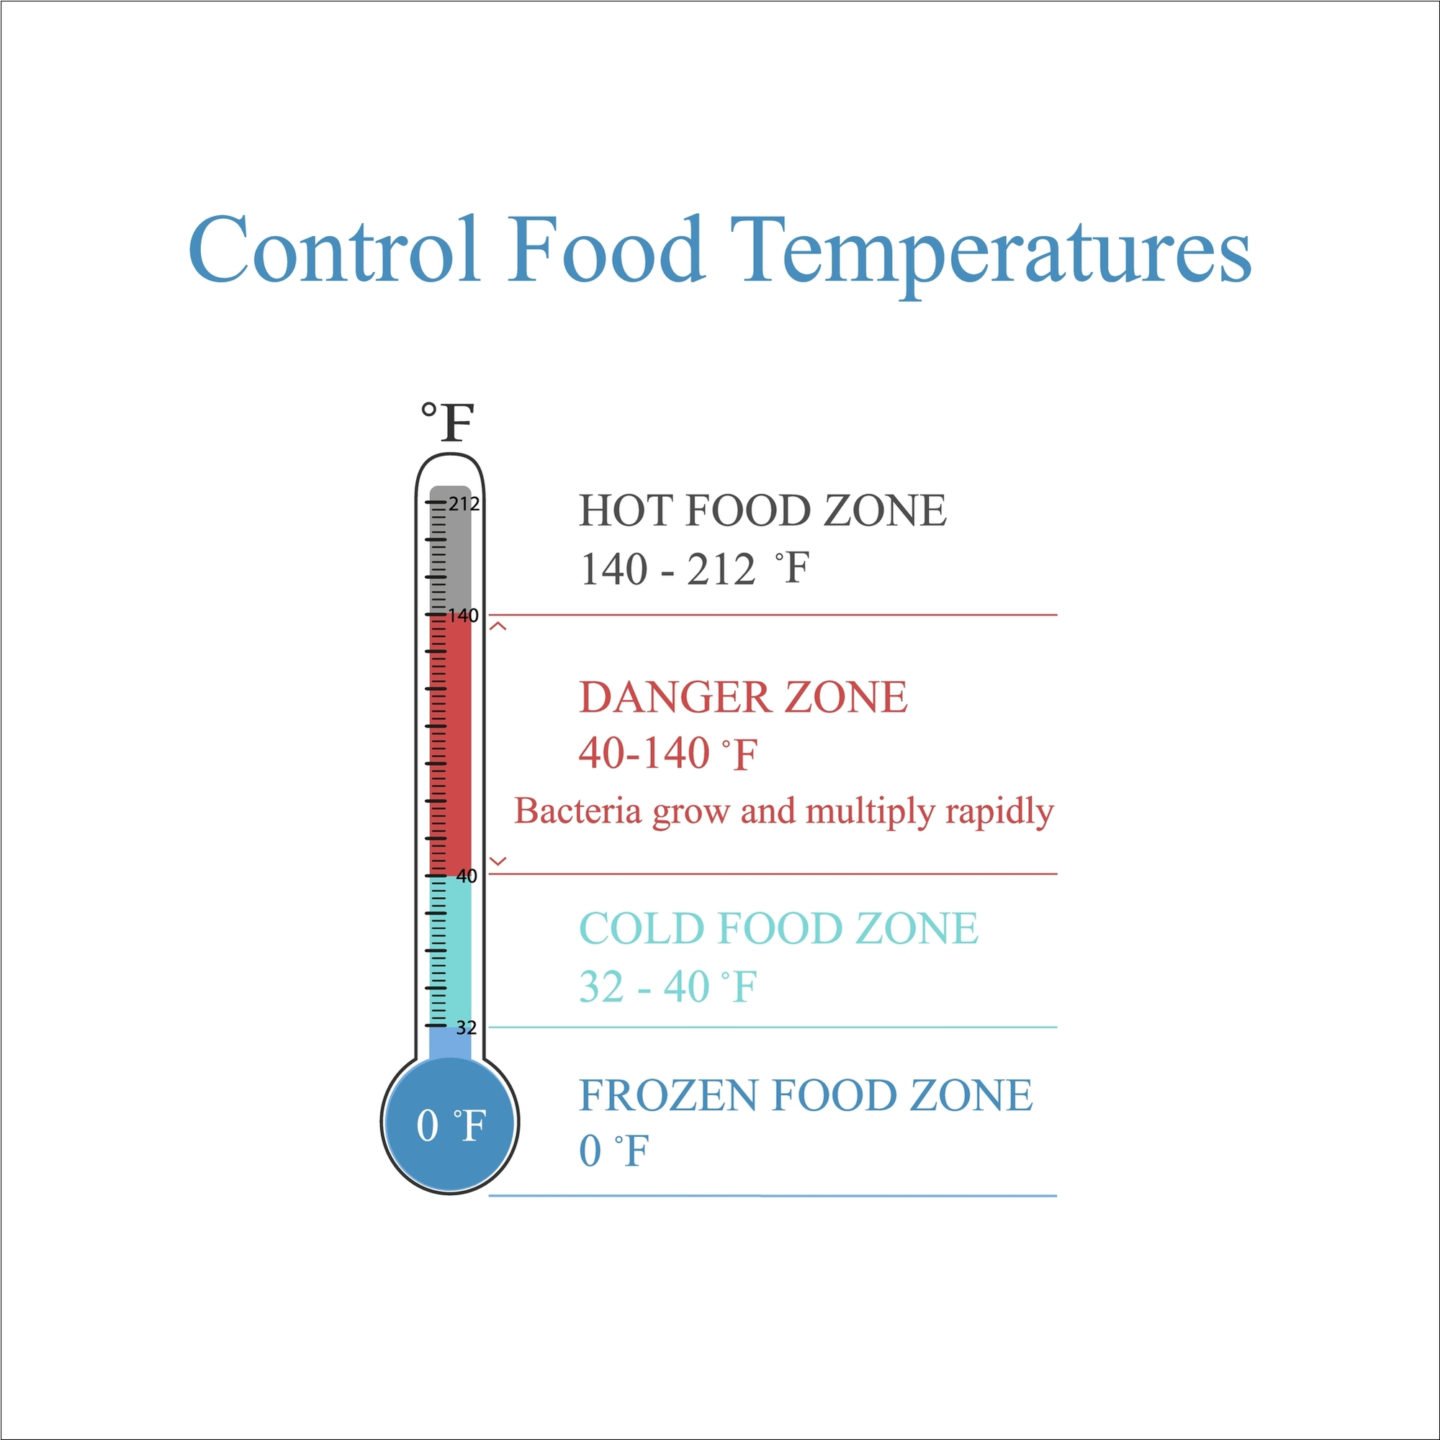 Food Temperature Ranges And Descriptions